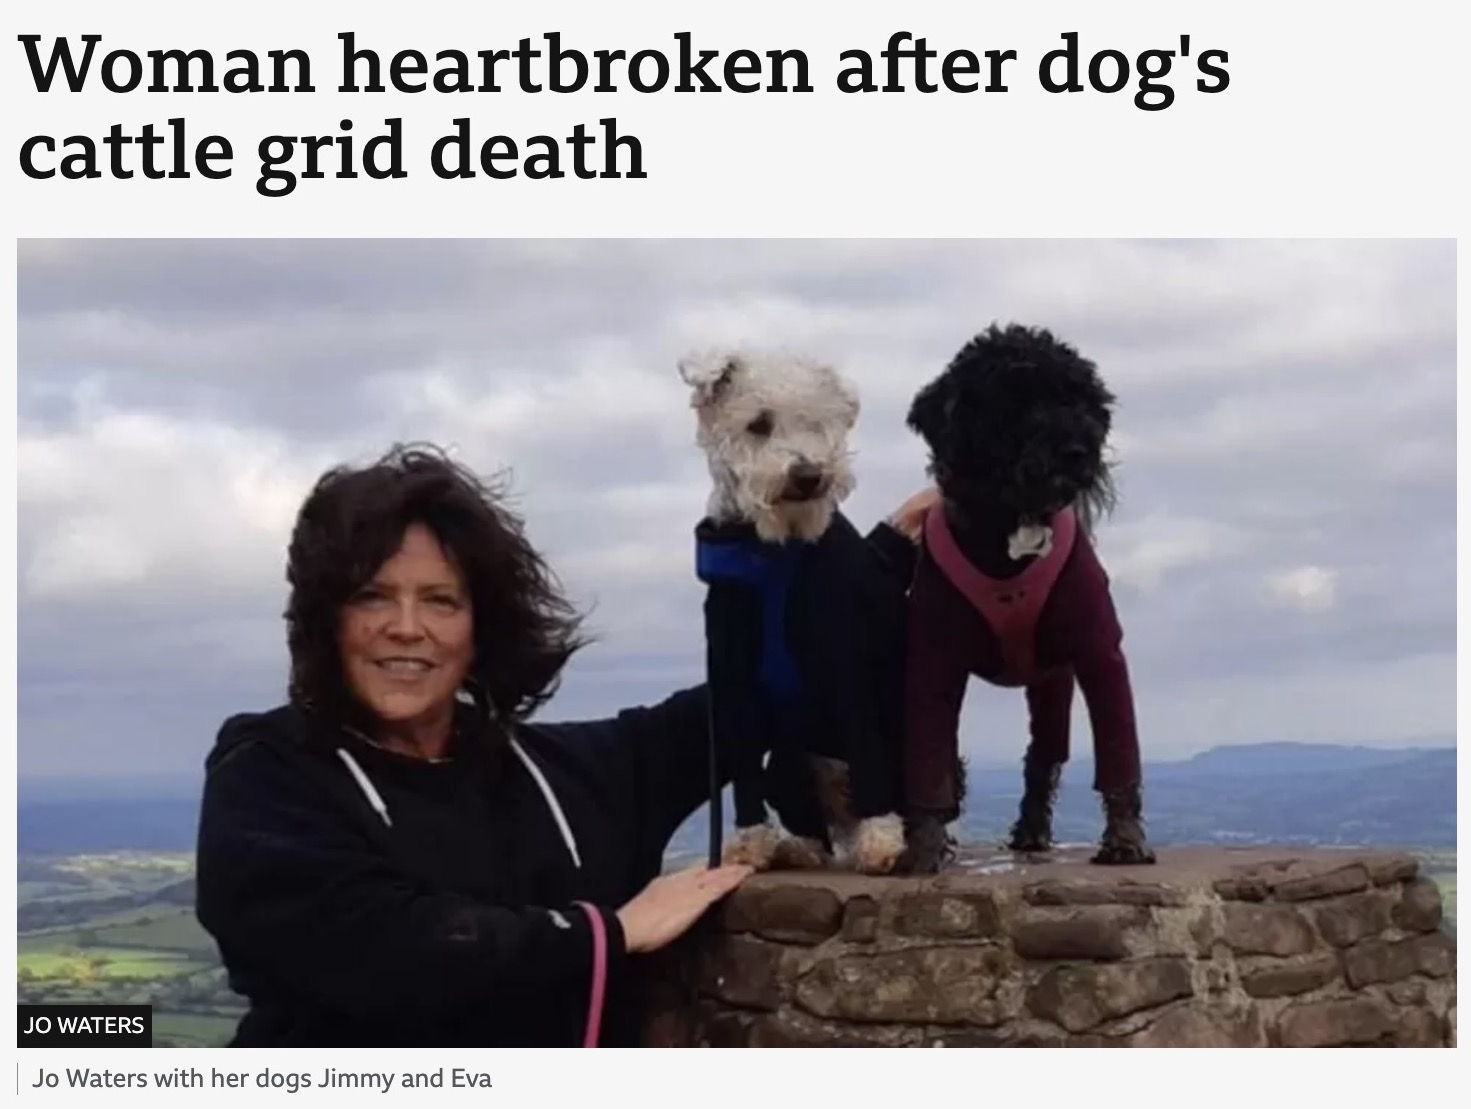 キャトルグリッド（家畜侵入防止用の鉄柵）に挟まり命を落とした犬（右）。飼い主のジョーさんは、事故後すぐにコミュニティーサイトで愛犬家に注意を呼びかけた（画像は『BBC　2023年5月5日付「Woman heartbroken after dog’s cattle grid death」（JO WATERS）』のスクリーンショット）